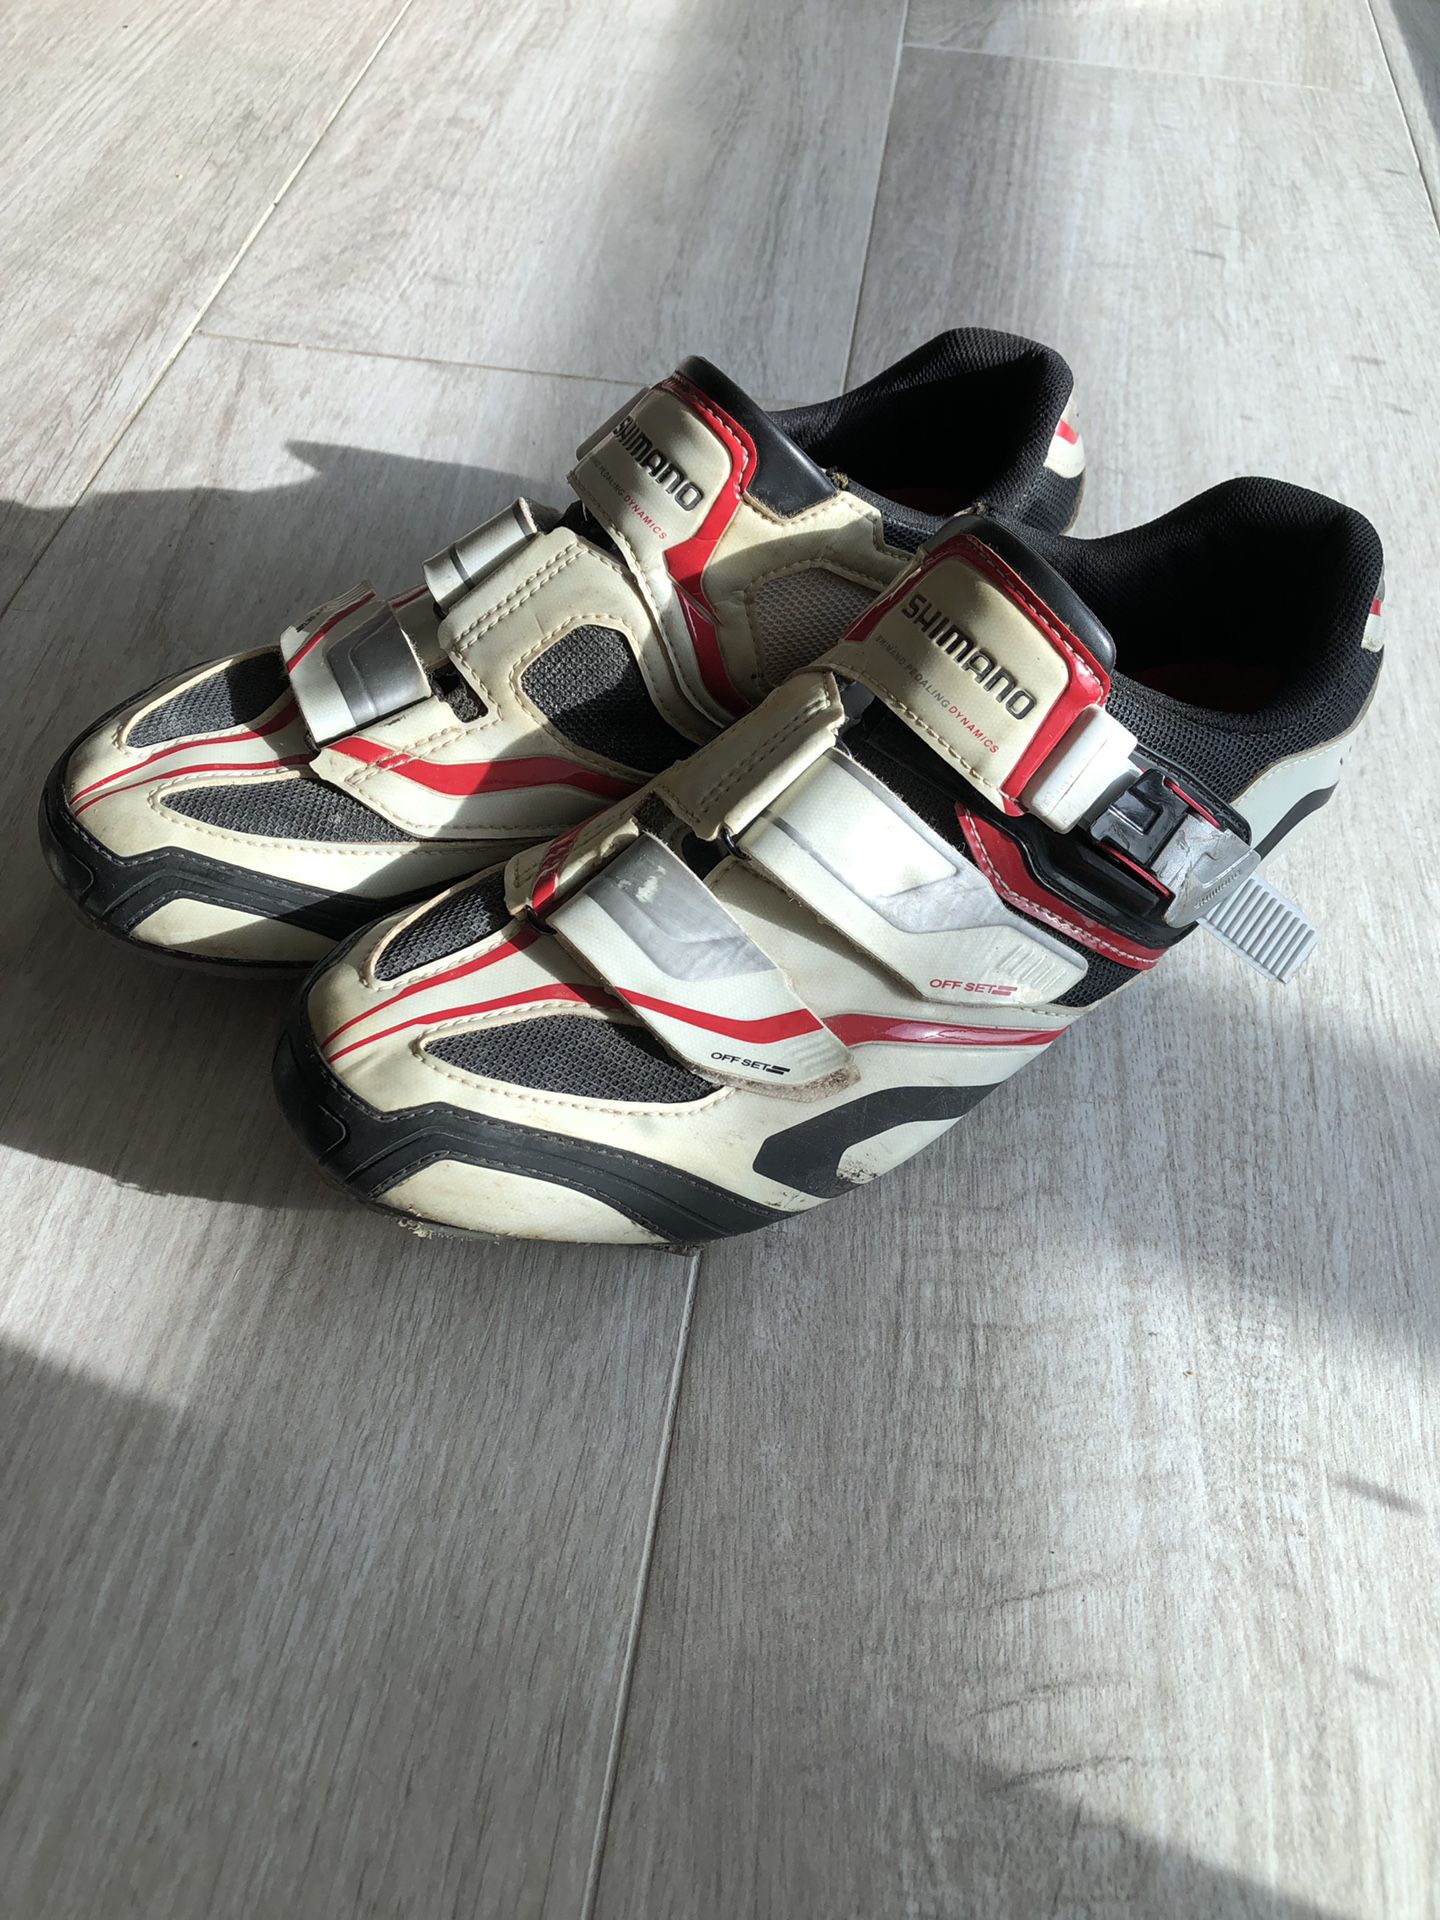 Shimano cycling shoes size 11-1/2